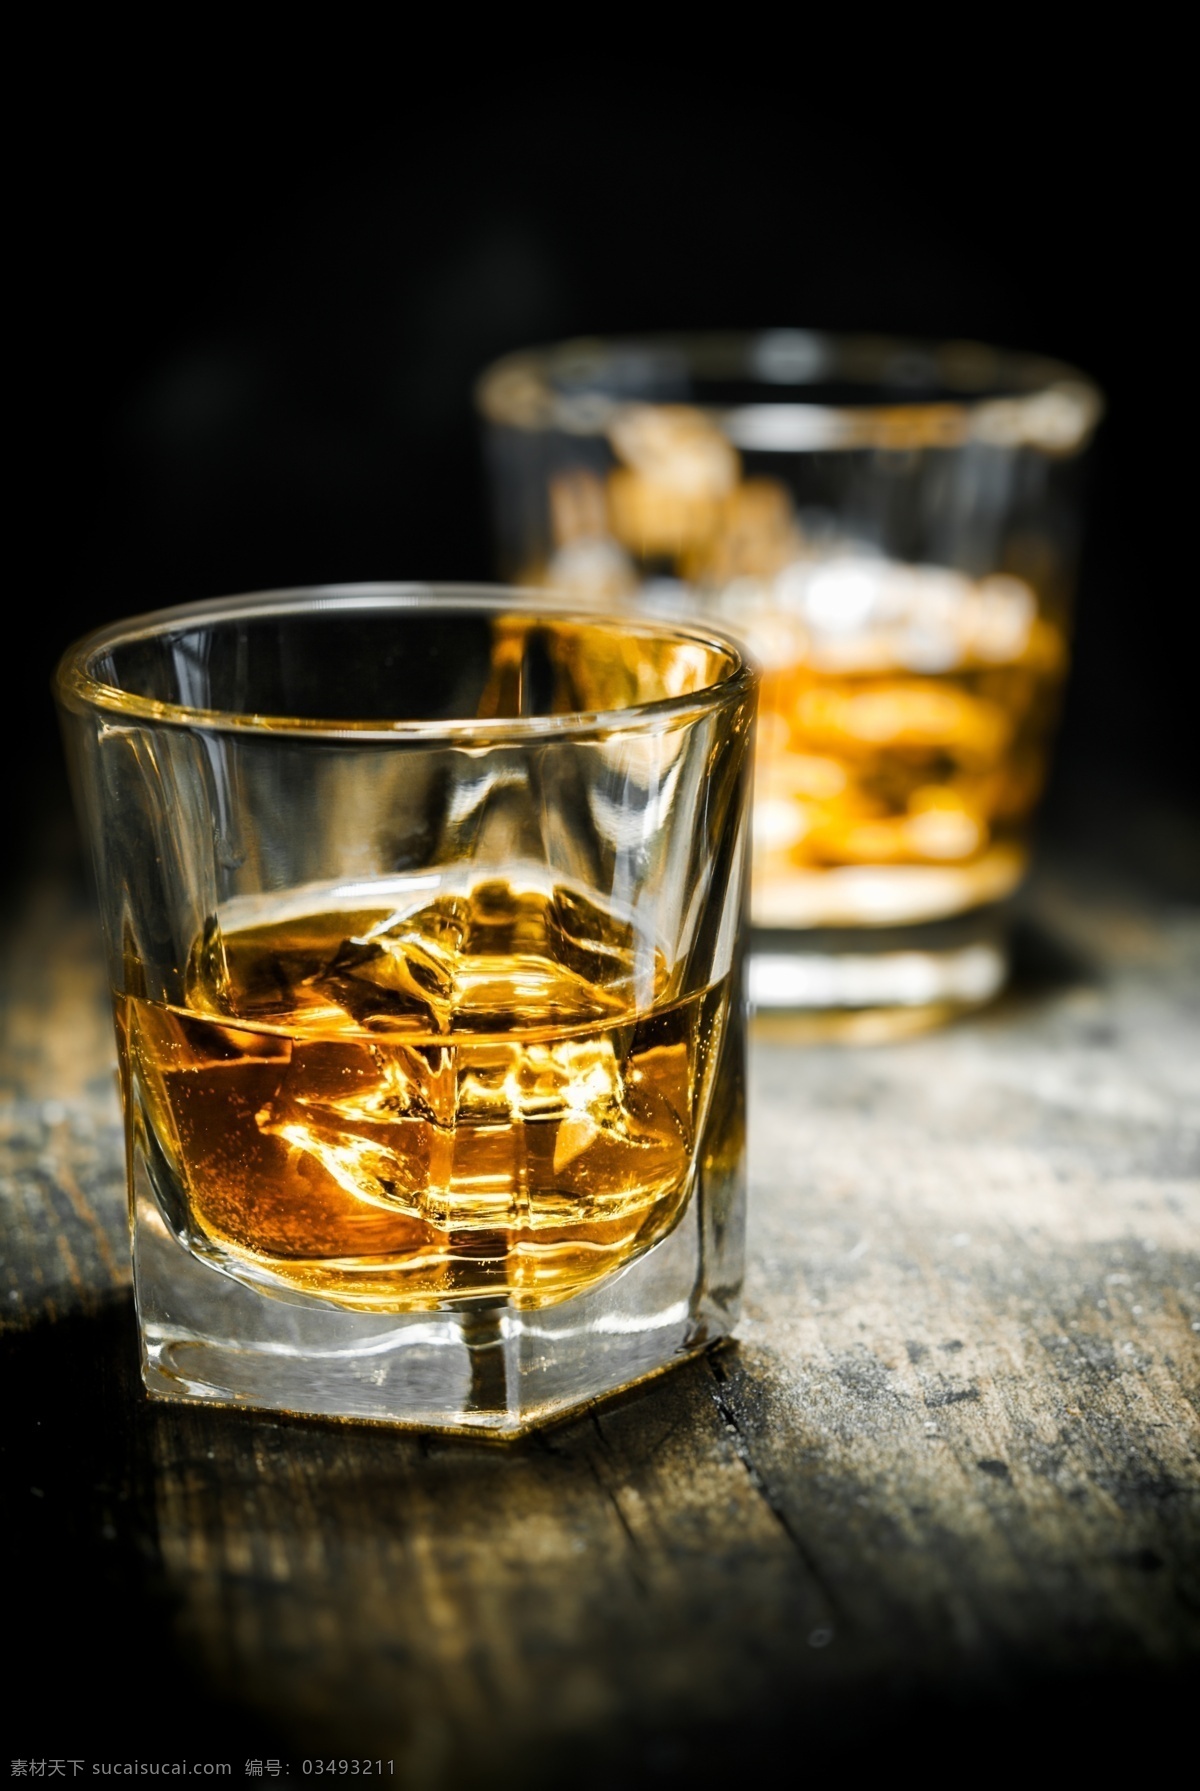 加 冰块 威士忌 洋酒 酒水 玻璃酒杯 玻璃杯子 酒类图片 餐饮美食